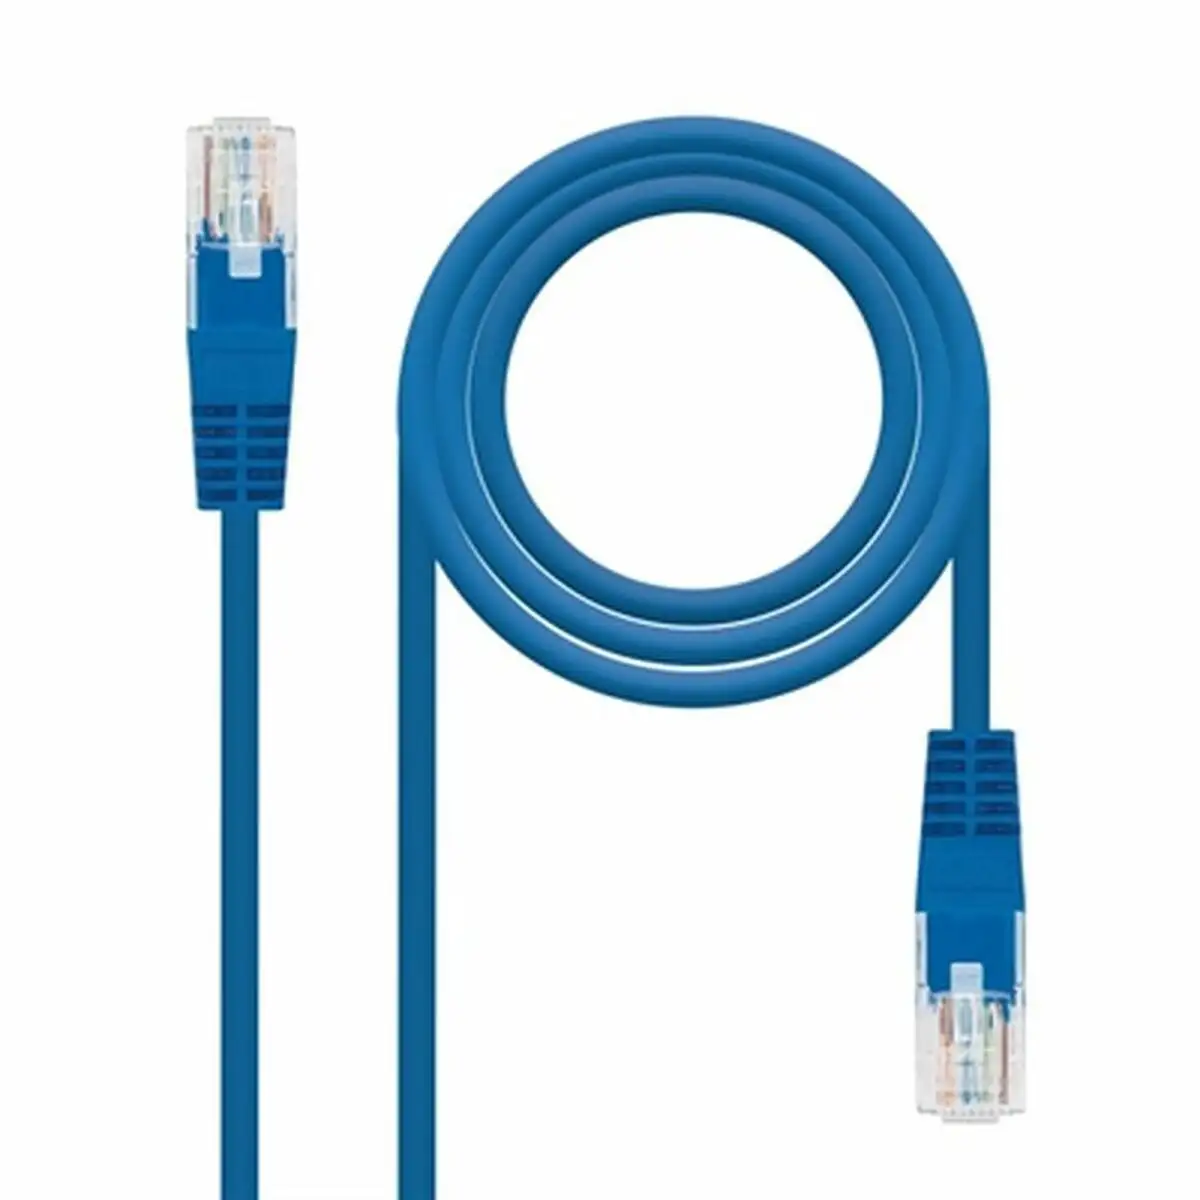 Cable reseau rigide utp 6eme categorie nanocable bleu_3198. Bienvenue chez DIAYTAR SENEGAL - Où Chaque Achat Fait une Différence. Découvrez notre gamme de produits qui reflètent l'engagement envers la qualité et le respect de l'environnement.